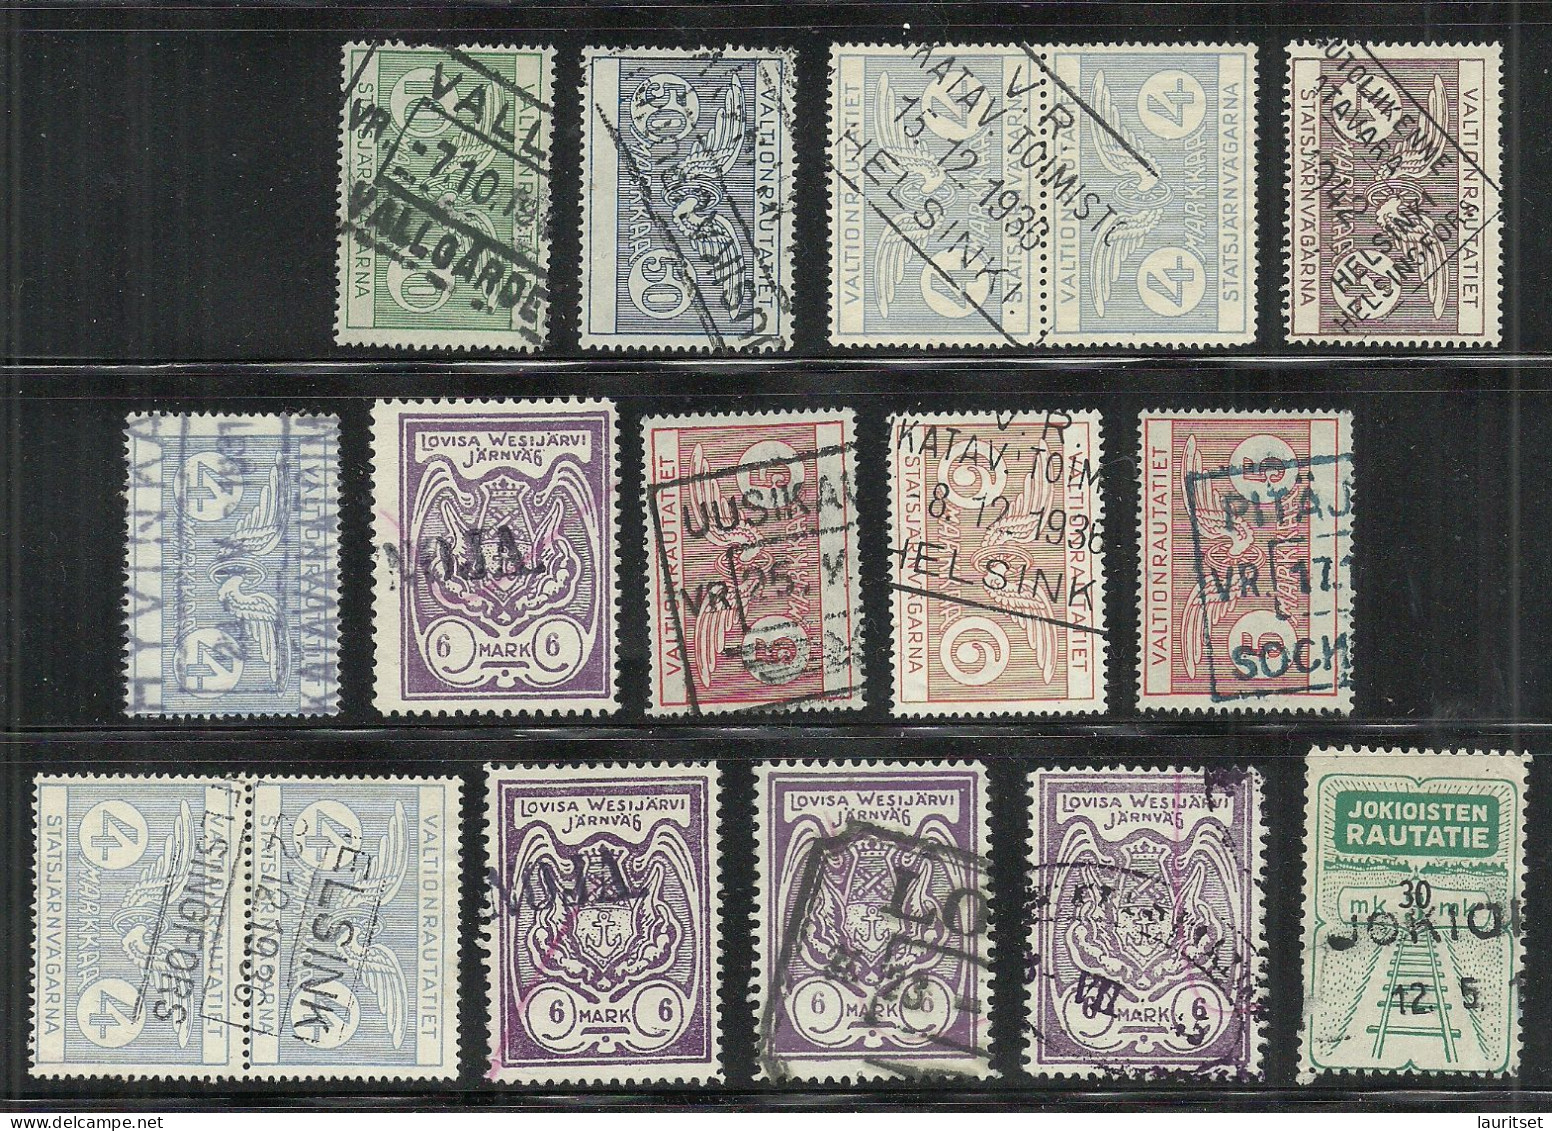 FINLAND FINNLAND 1920ies/1930ies Small Lot Of Railway Packet Stamps Eisenbahn Paketmarken O - Postpaketten